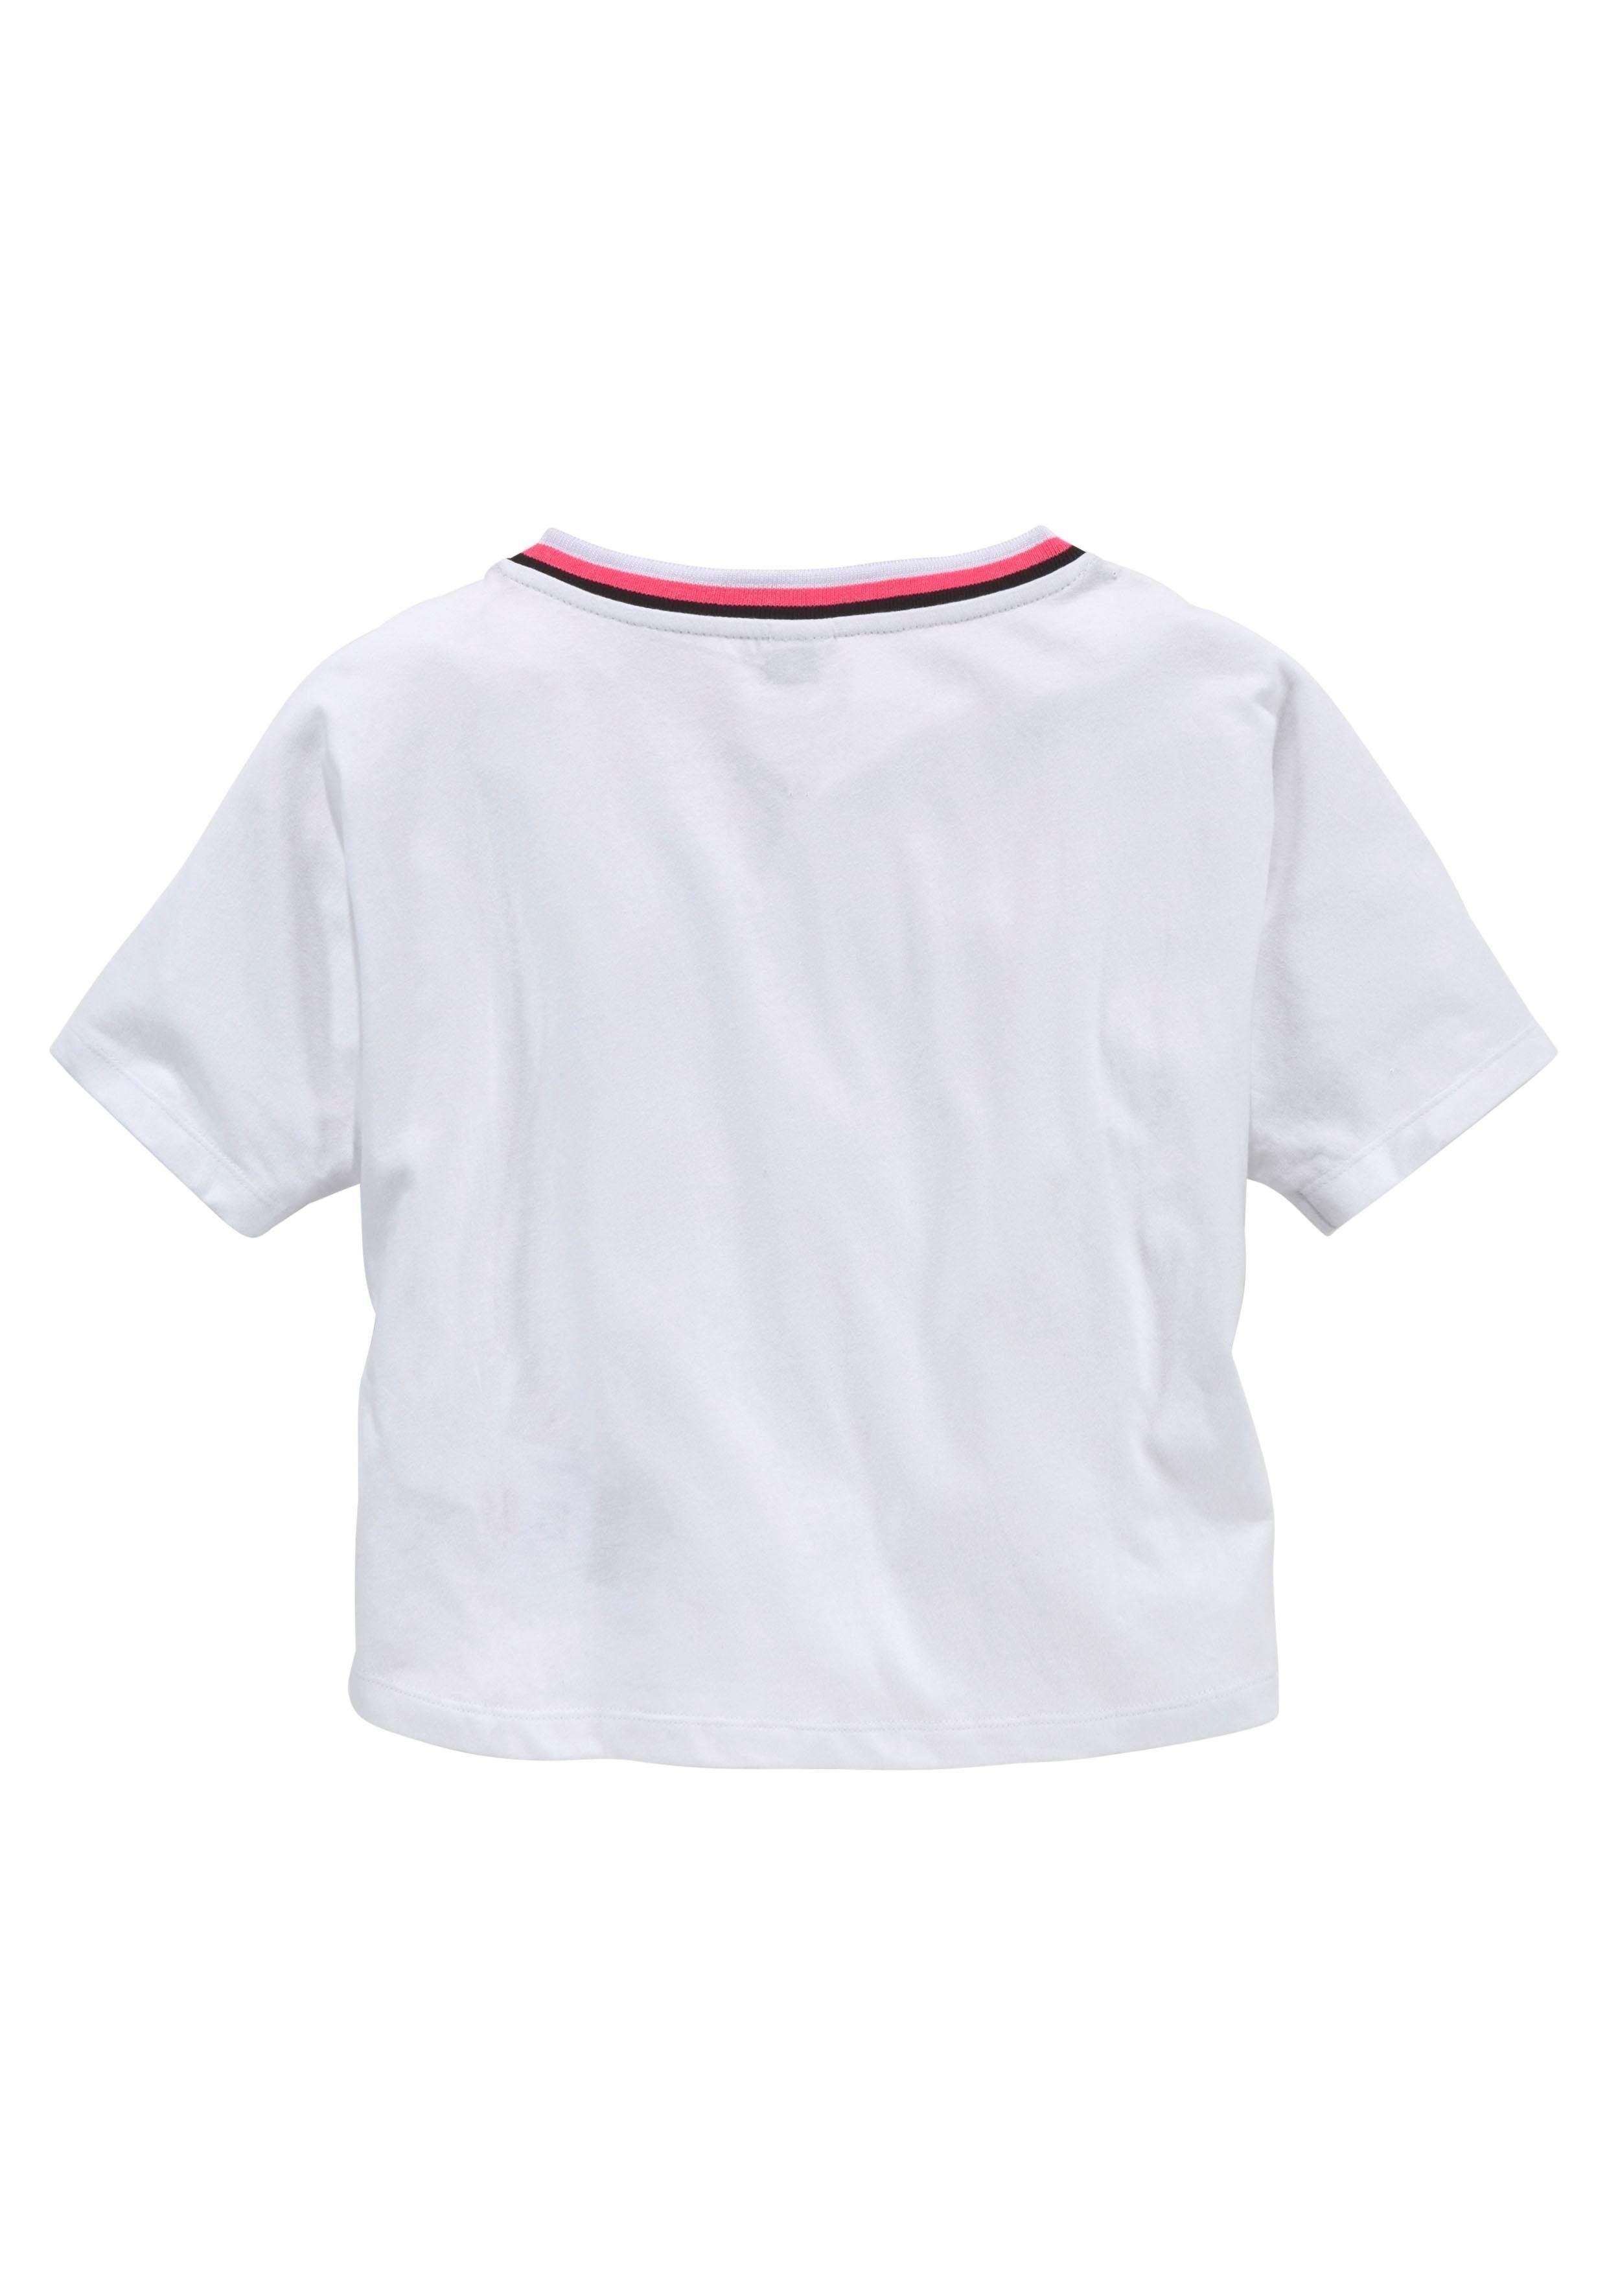 Bench. T-Shirt (Set, farbigem mit Top) mit Halsausschnitt 2-tlg